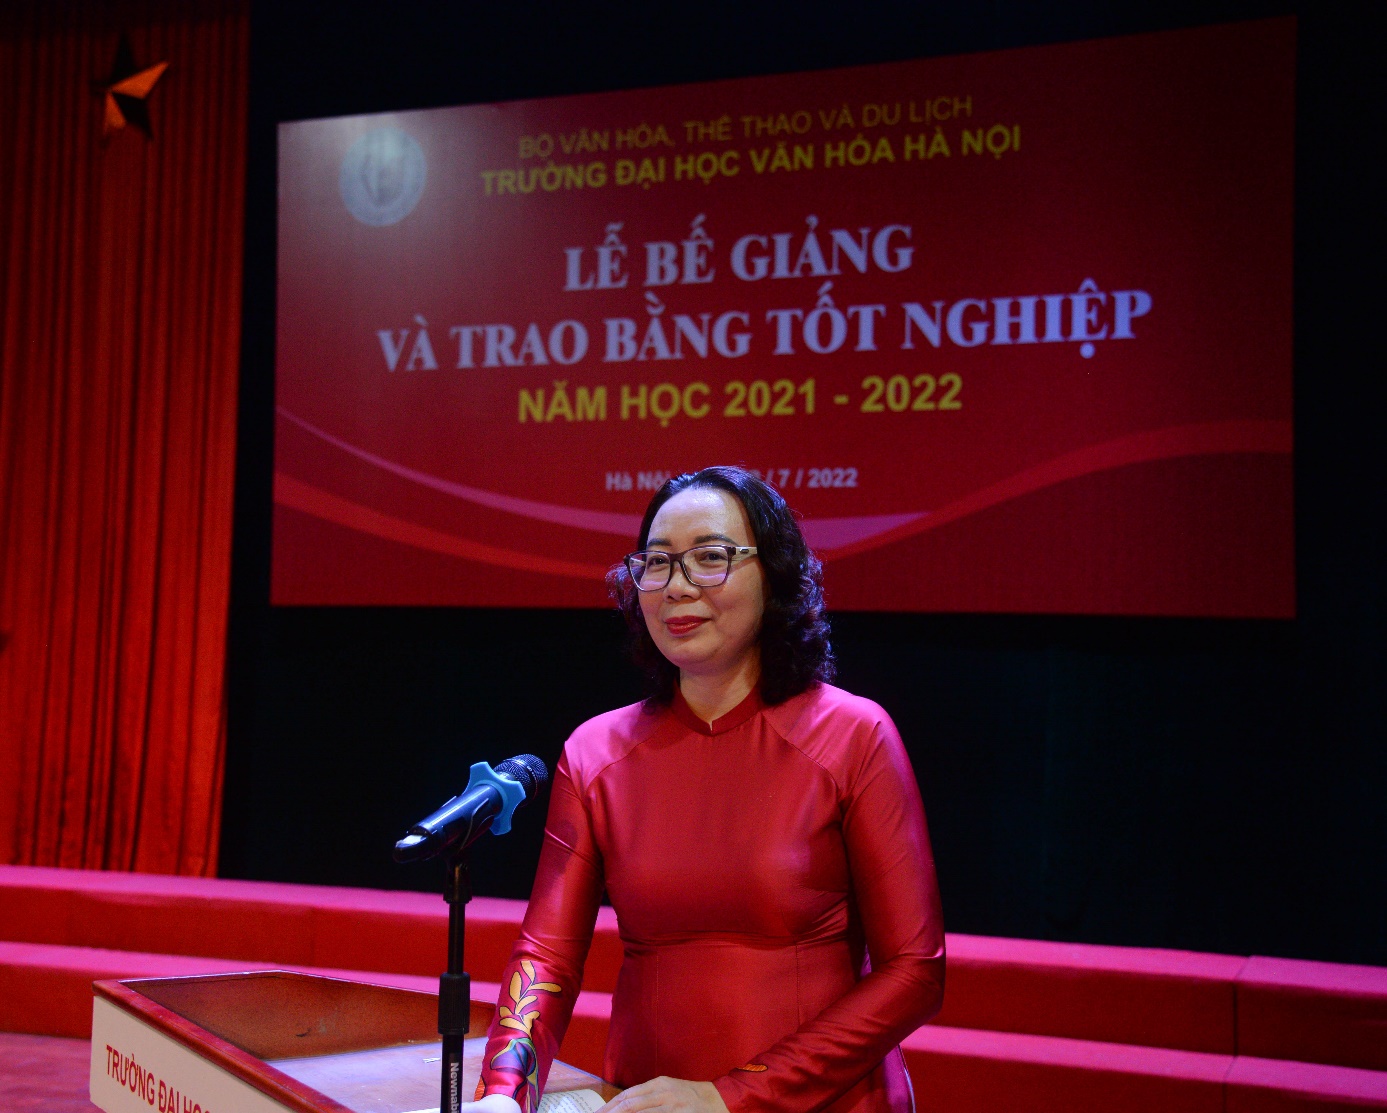 Trường Đại học Văn hóa Hà Nội tổ chức lễ bế giảng và trao bằng tốt nghiệp năm học 2021 – 2022 - Ảnh 4.